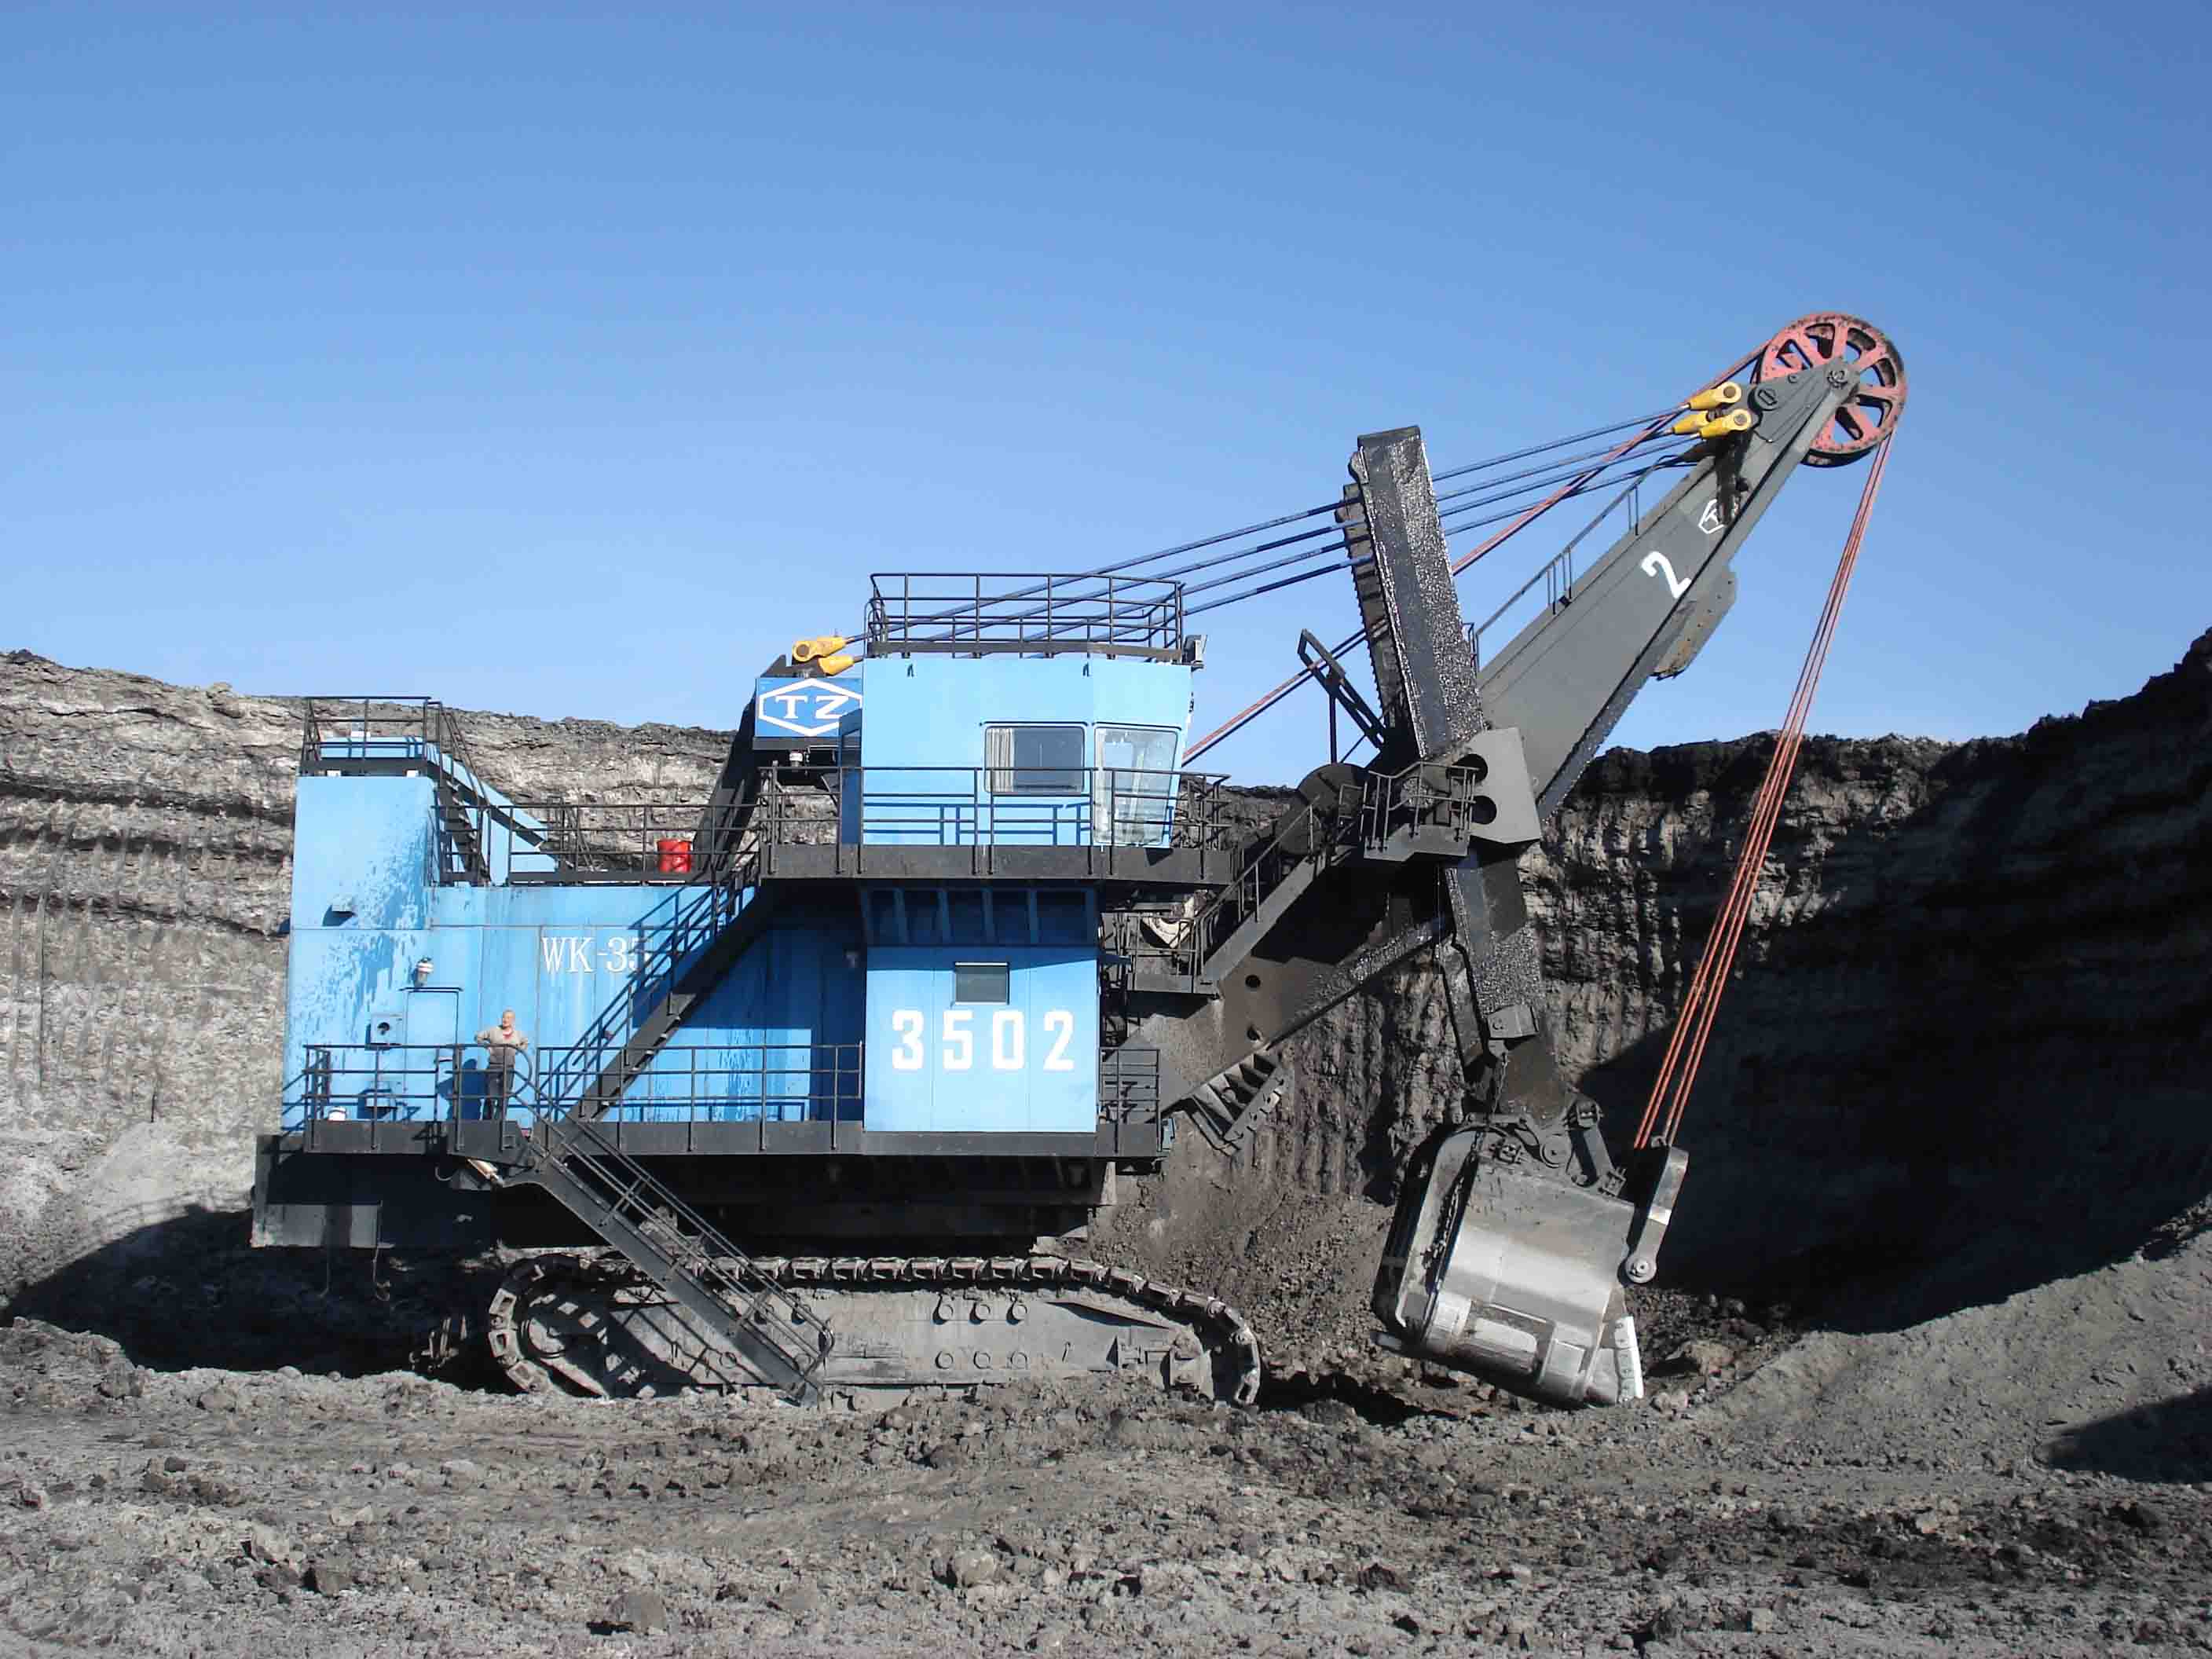 中国内蒙古某煤矿  为机械式正铲挖掘机提供配套备件